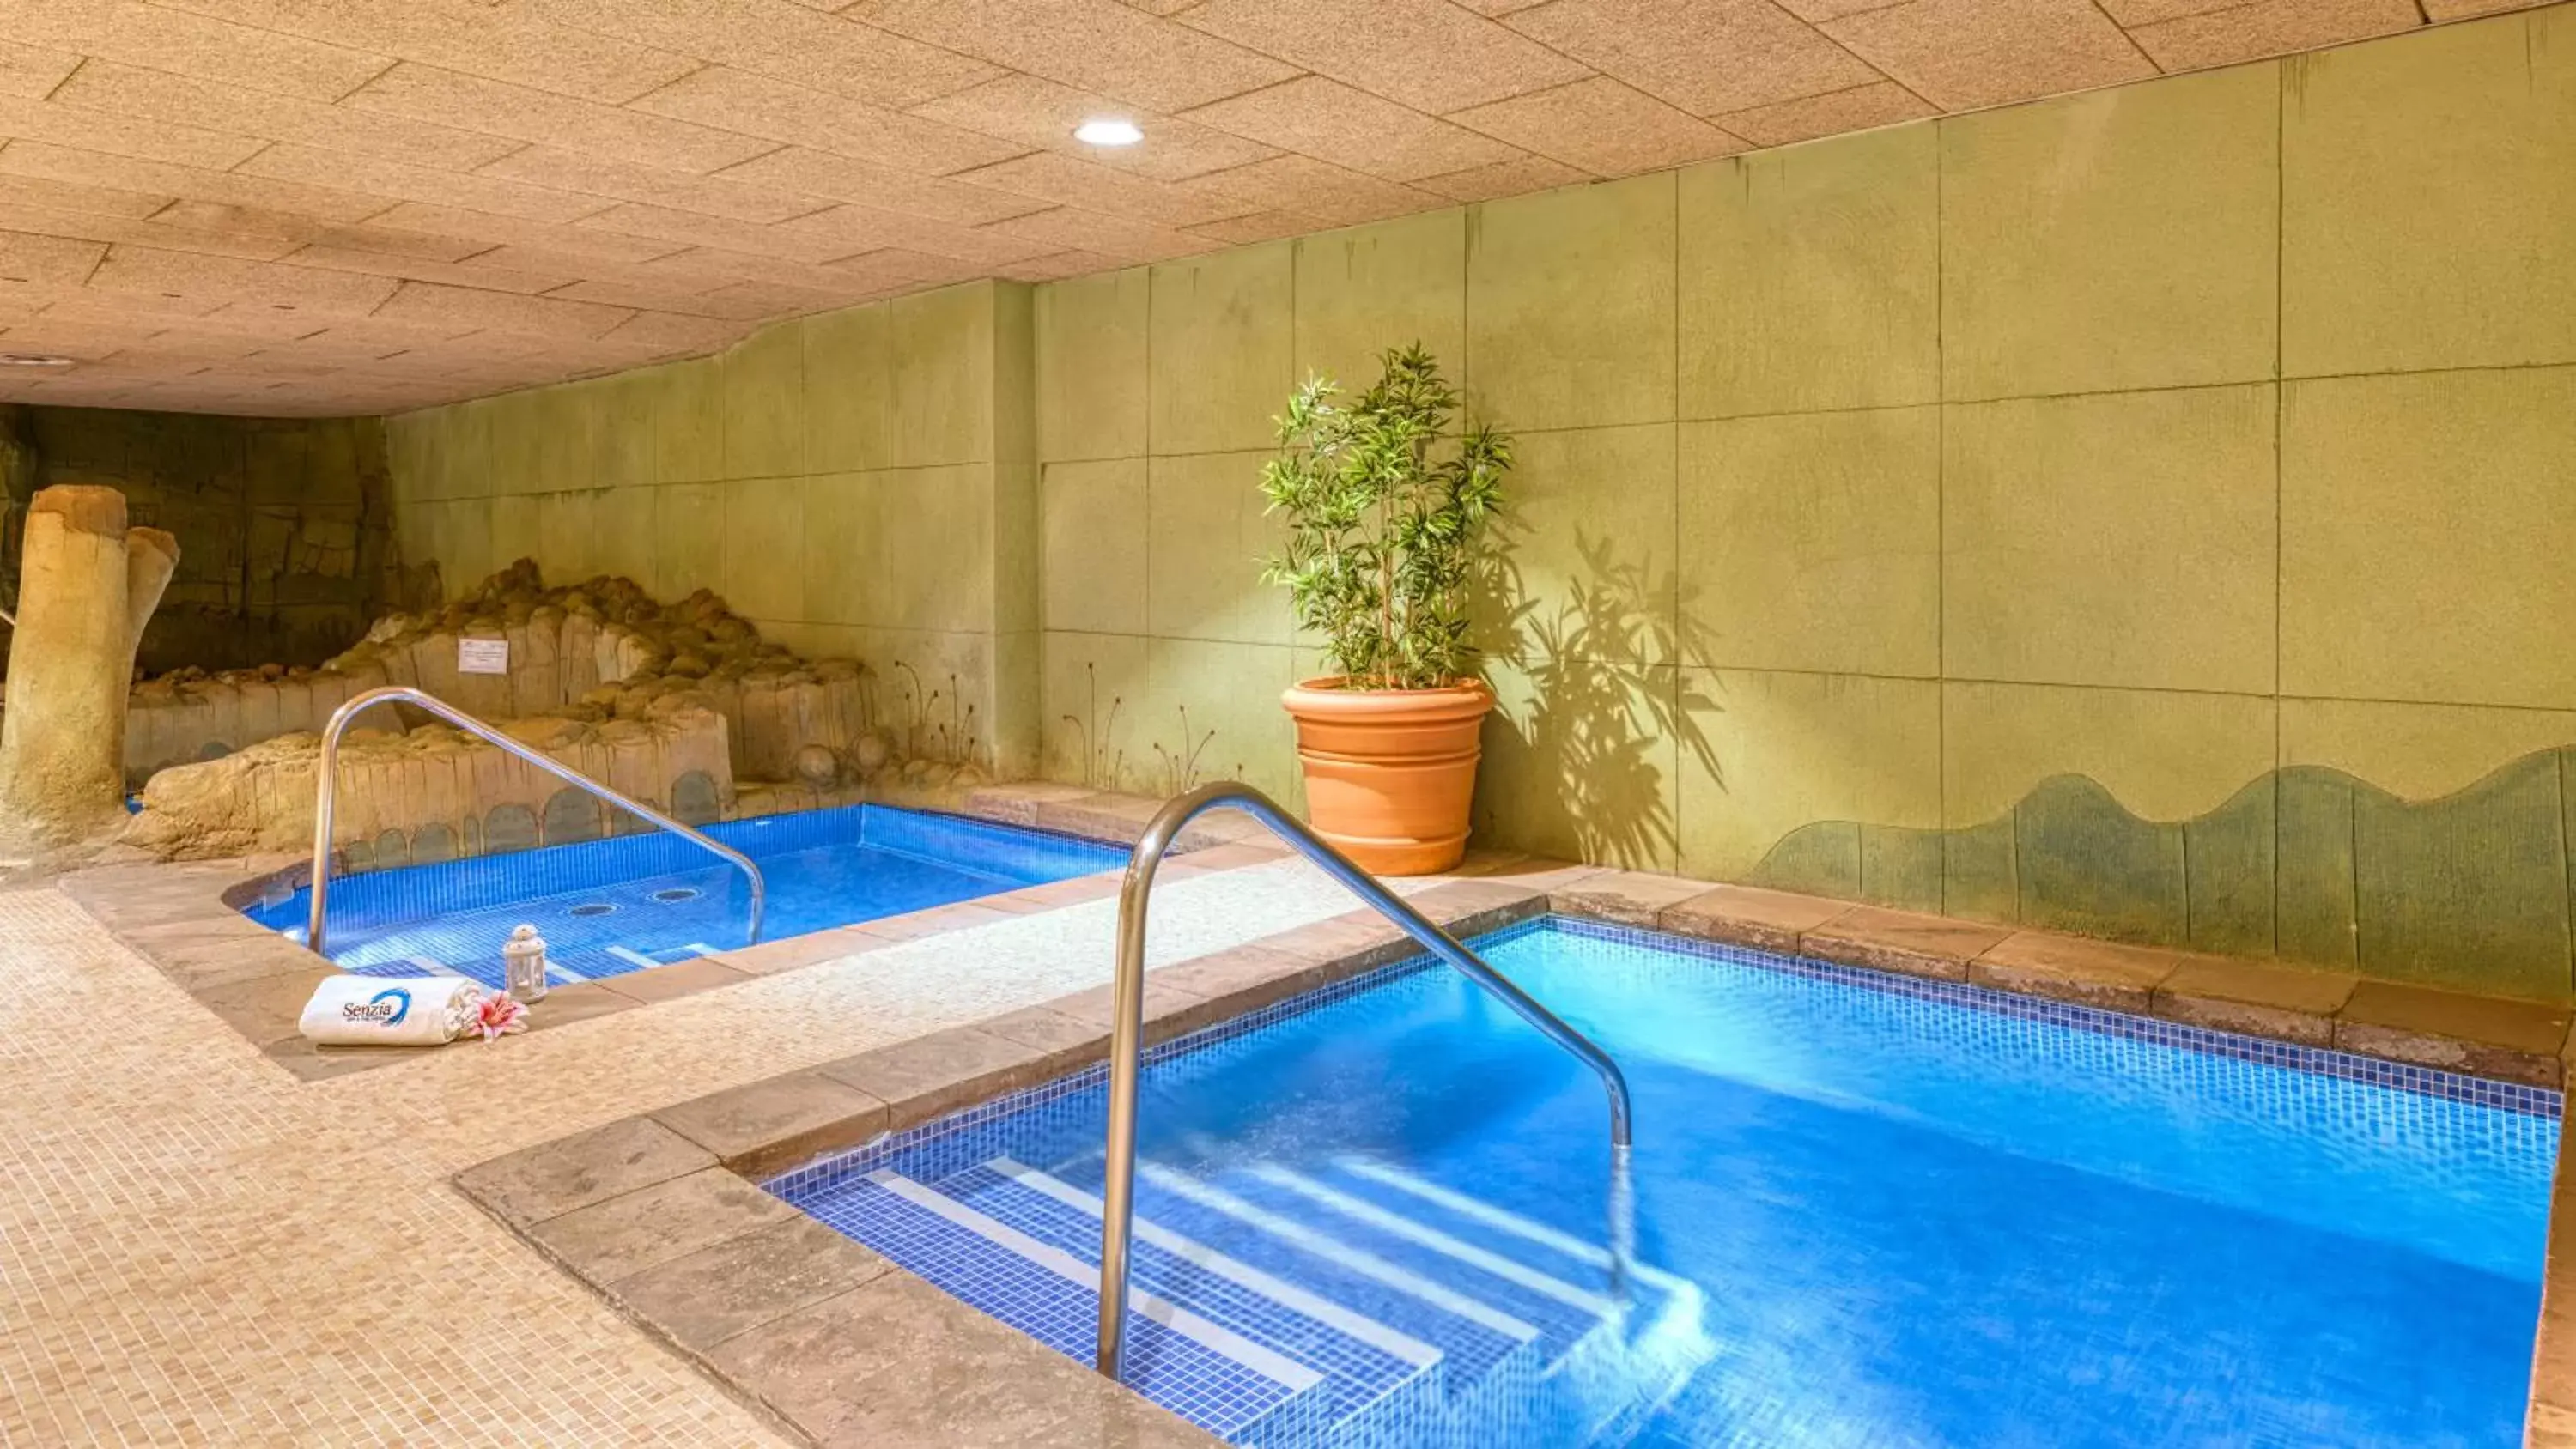 Spa and wellness centre/facilities, Swimming Pool in Senator Granada Spa Hotel